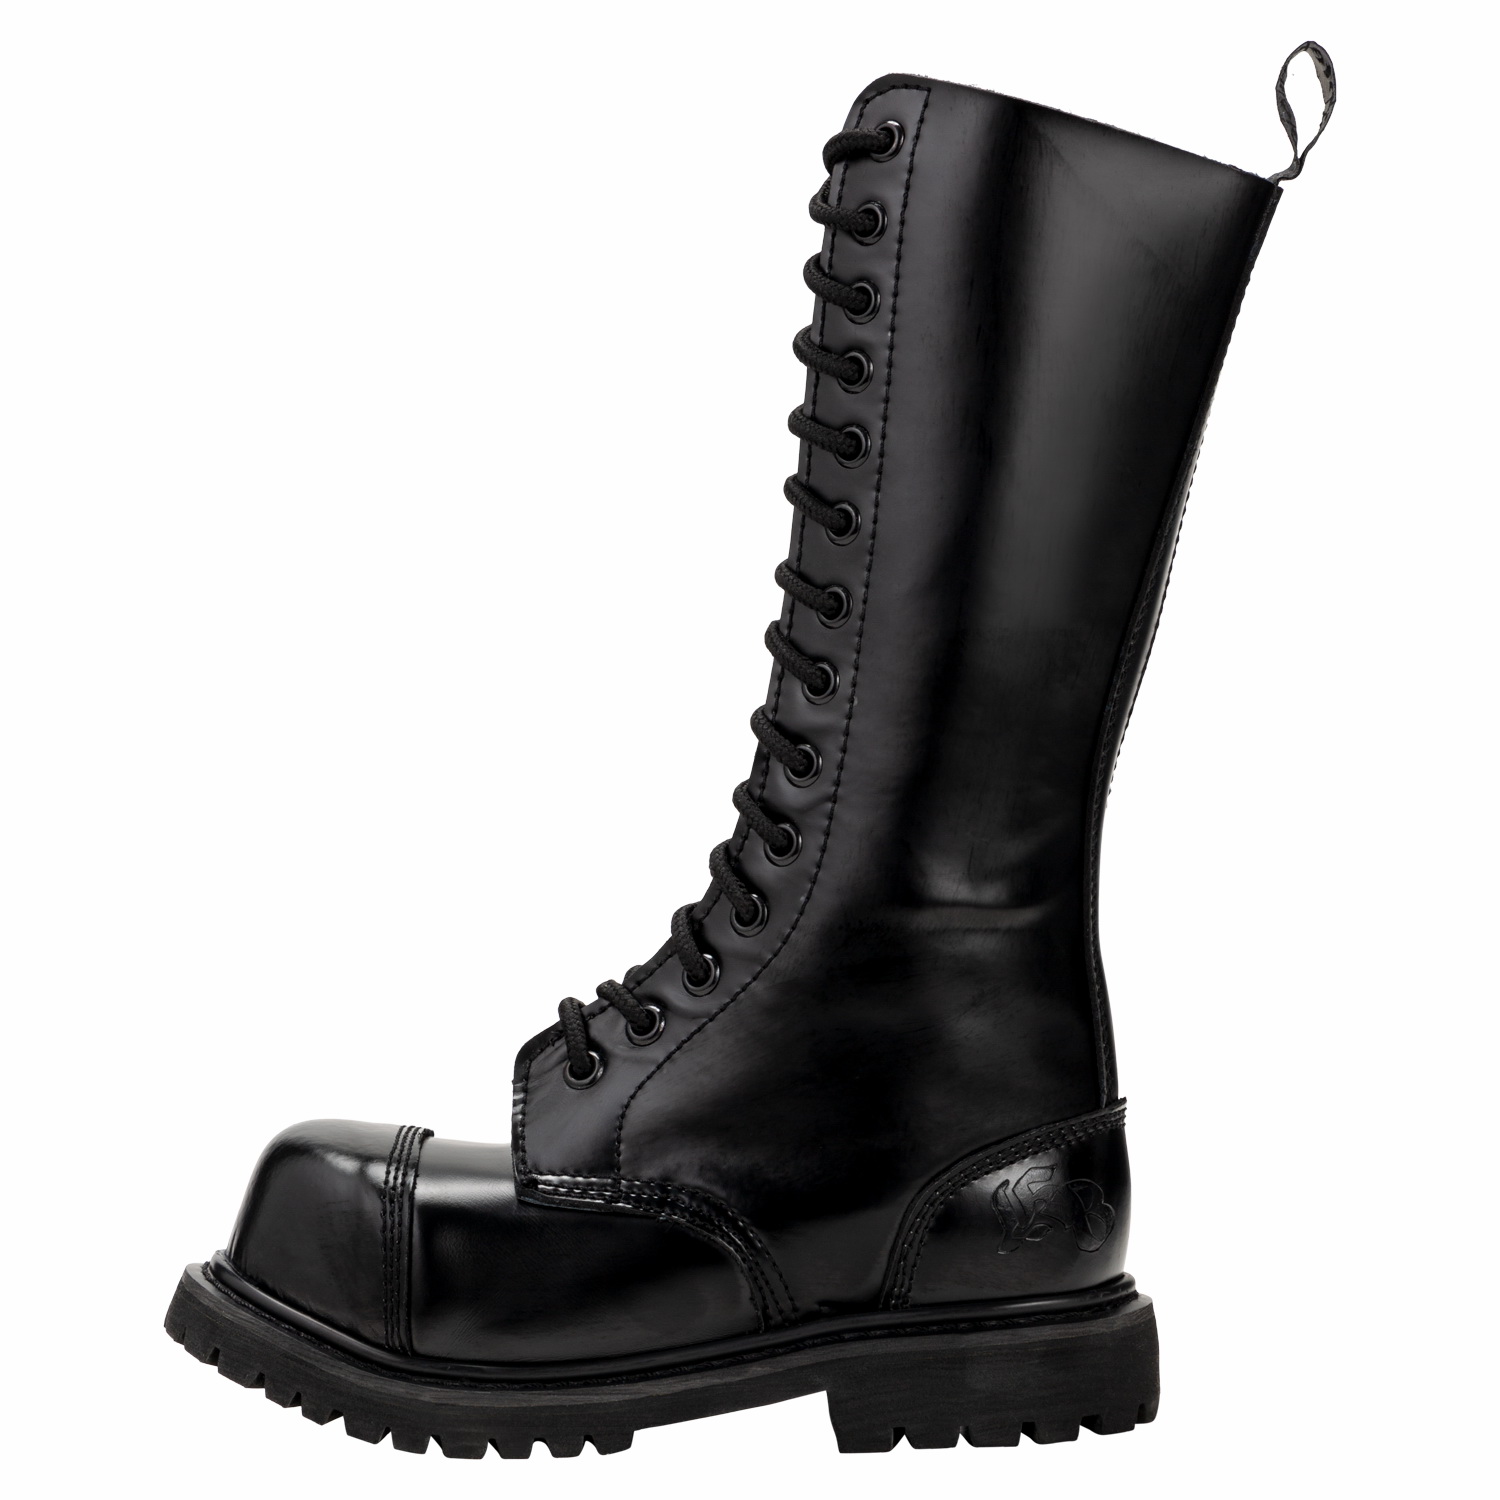 Ranger Boots Knightsbridge-Gothic Style Boots 3-Loch mit Stahlkappe schwarz neu 